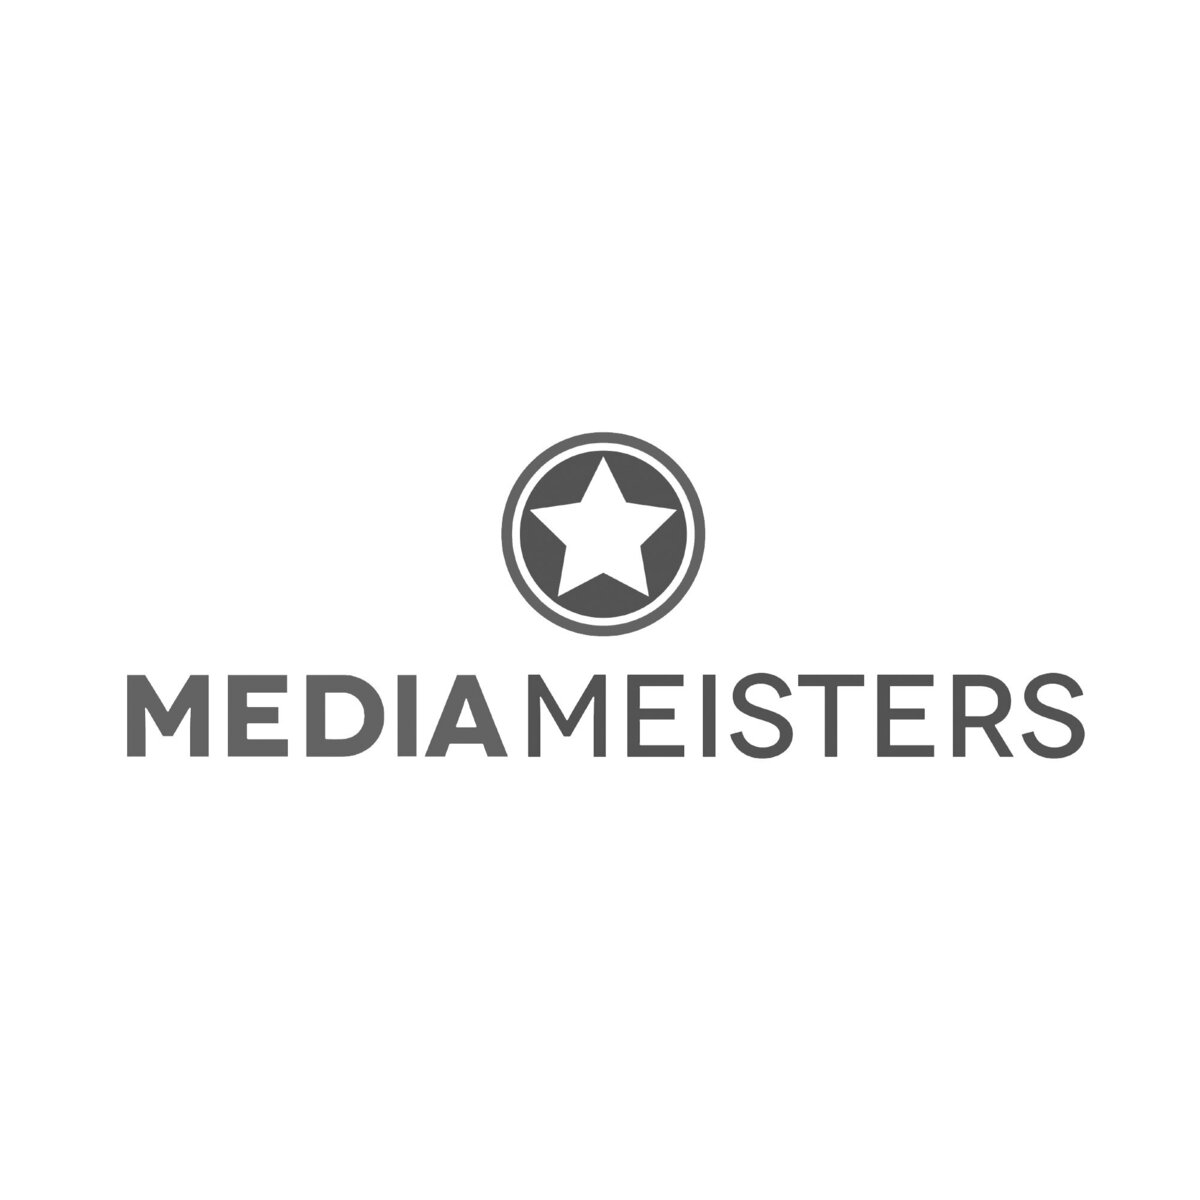 Mediameisters b&w